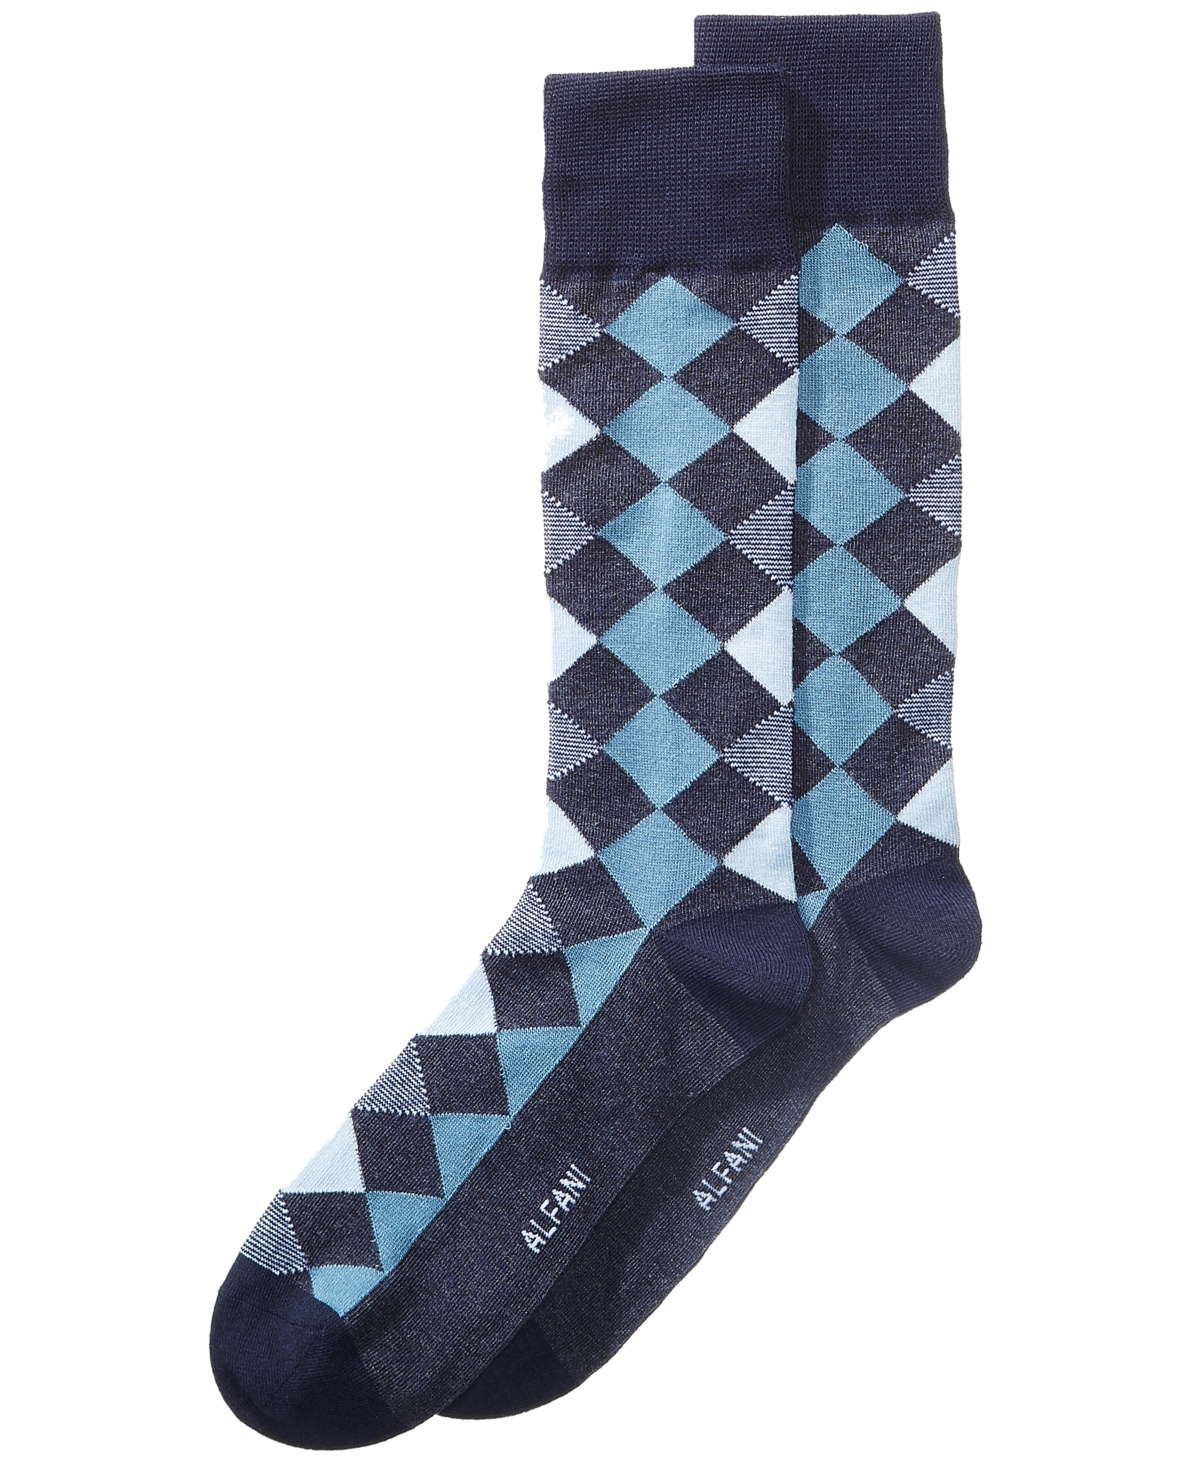 Men's Diamond Dress Socks, Created for Macy's - Blue Navy